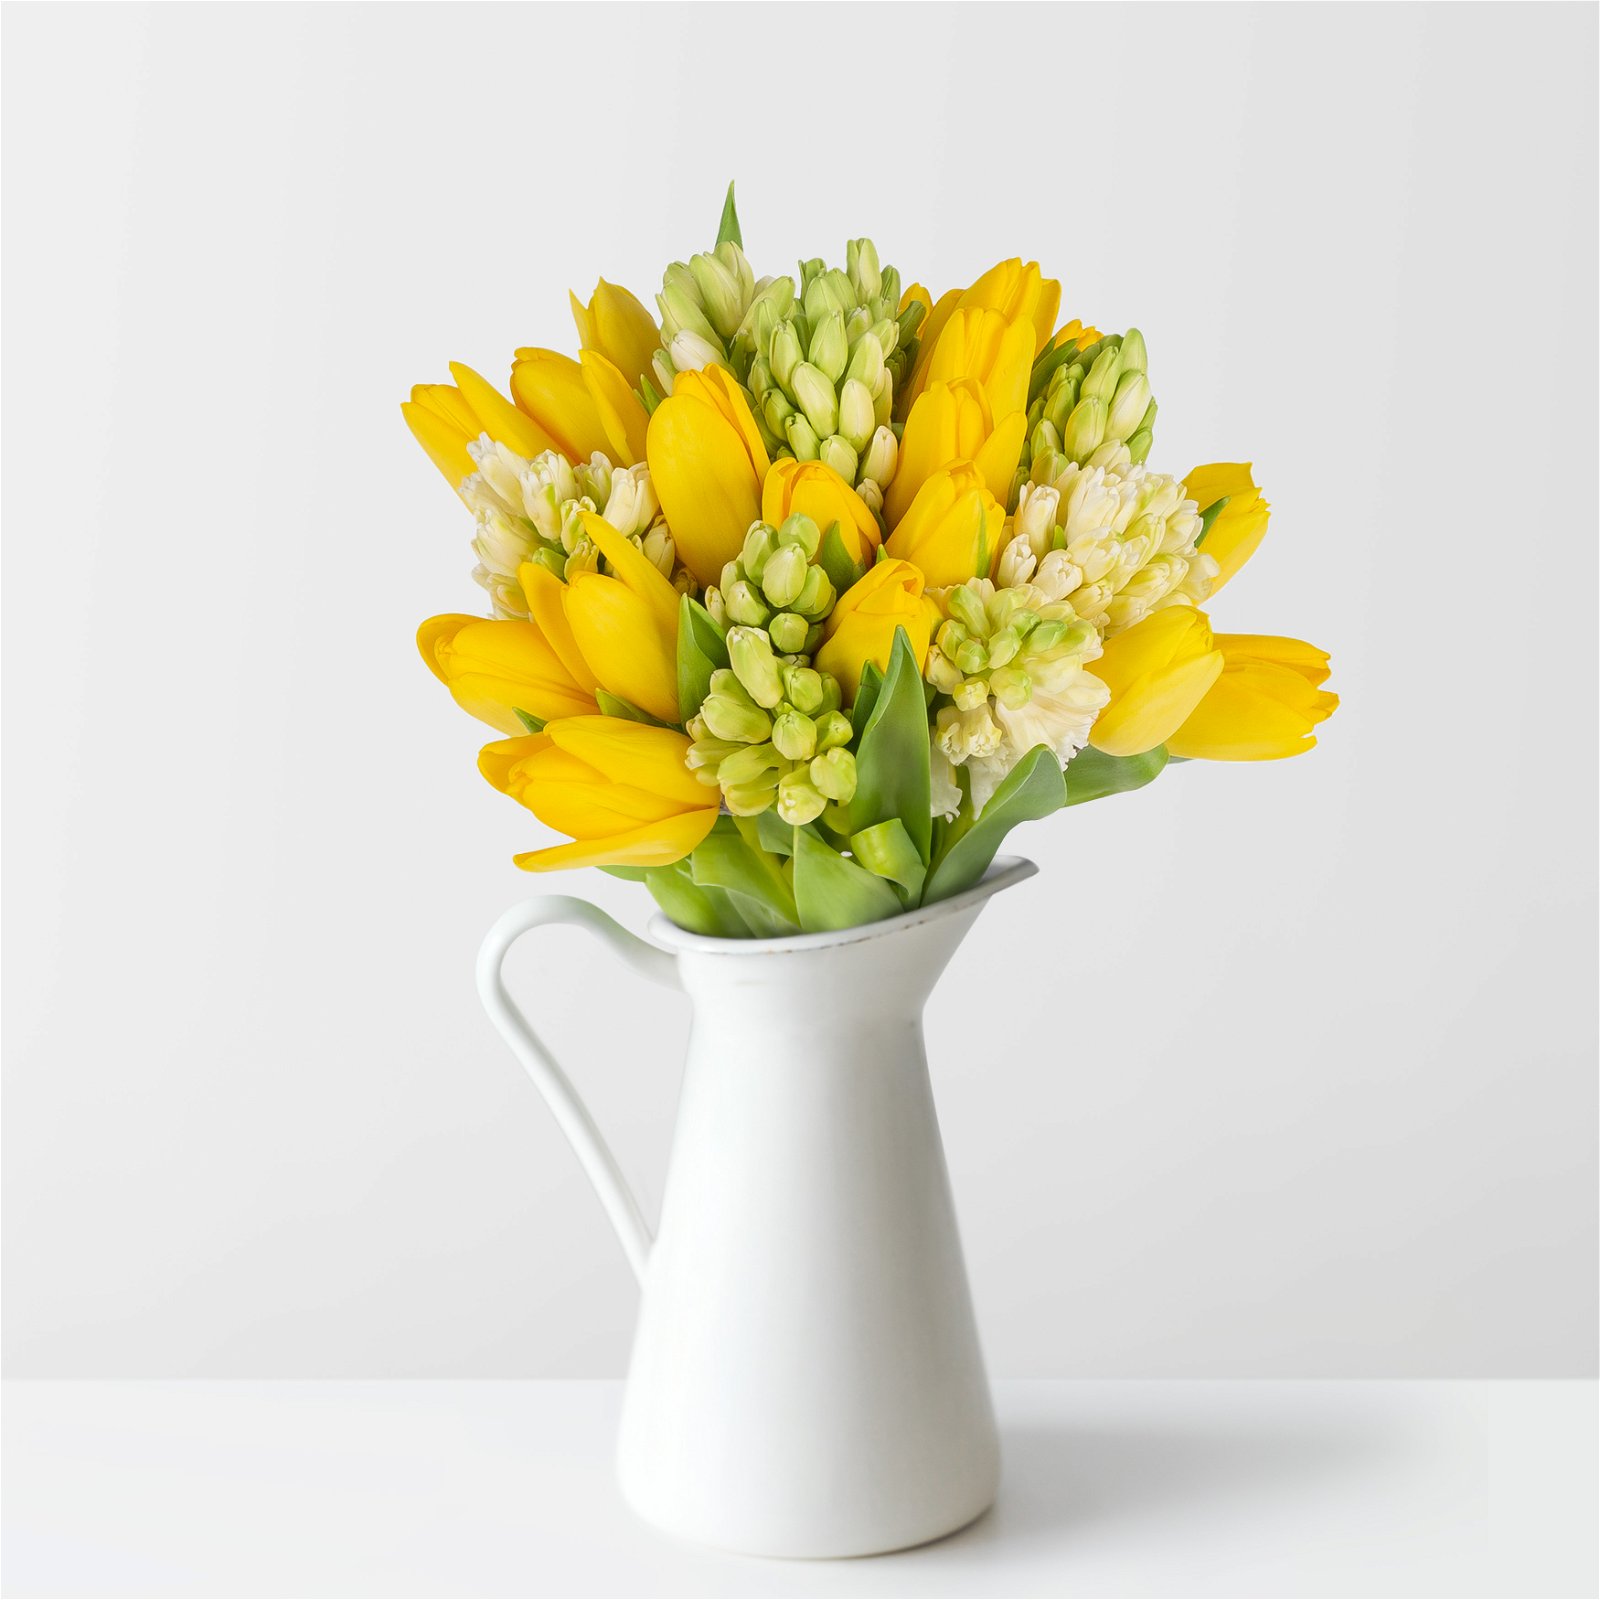 Gemischter Blumenbund 'Frühlingszeit', gelb-weiß, inkl. gratis Grußkarte